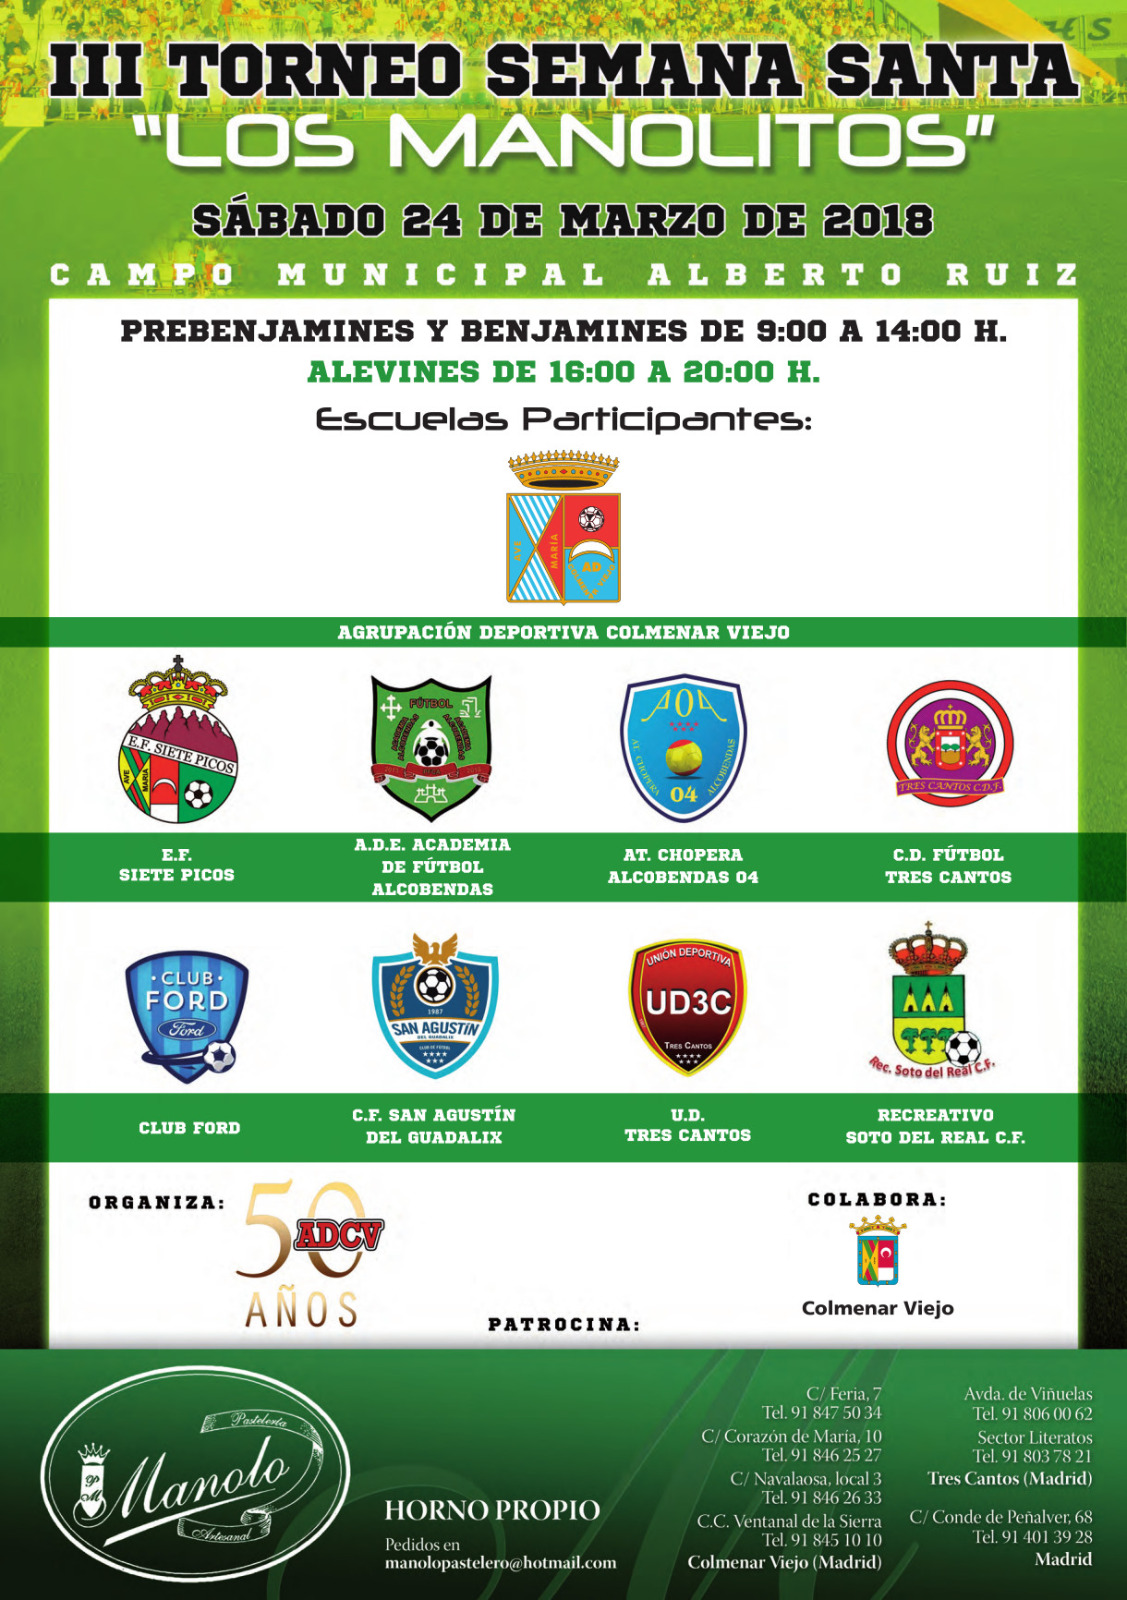 III Torneo de Semana Santa Los Manolitos 2018